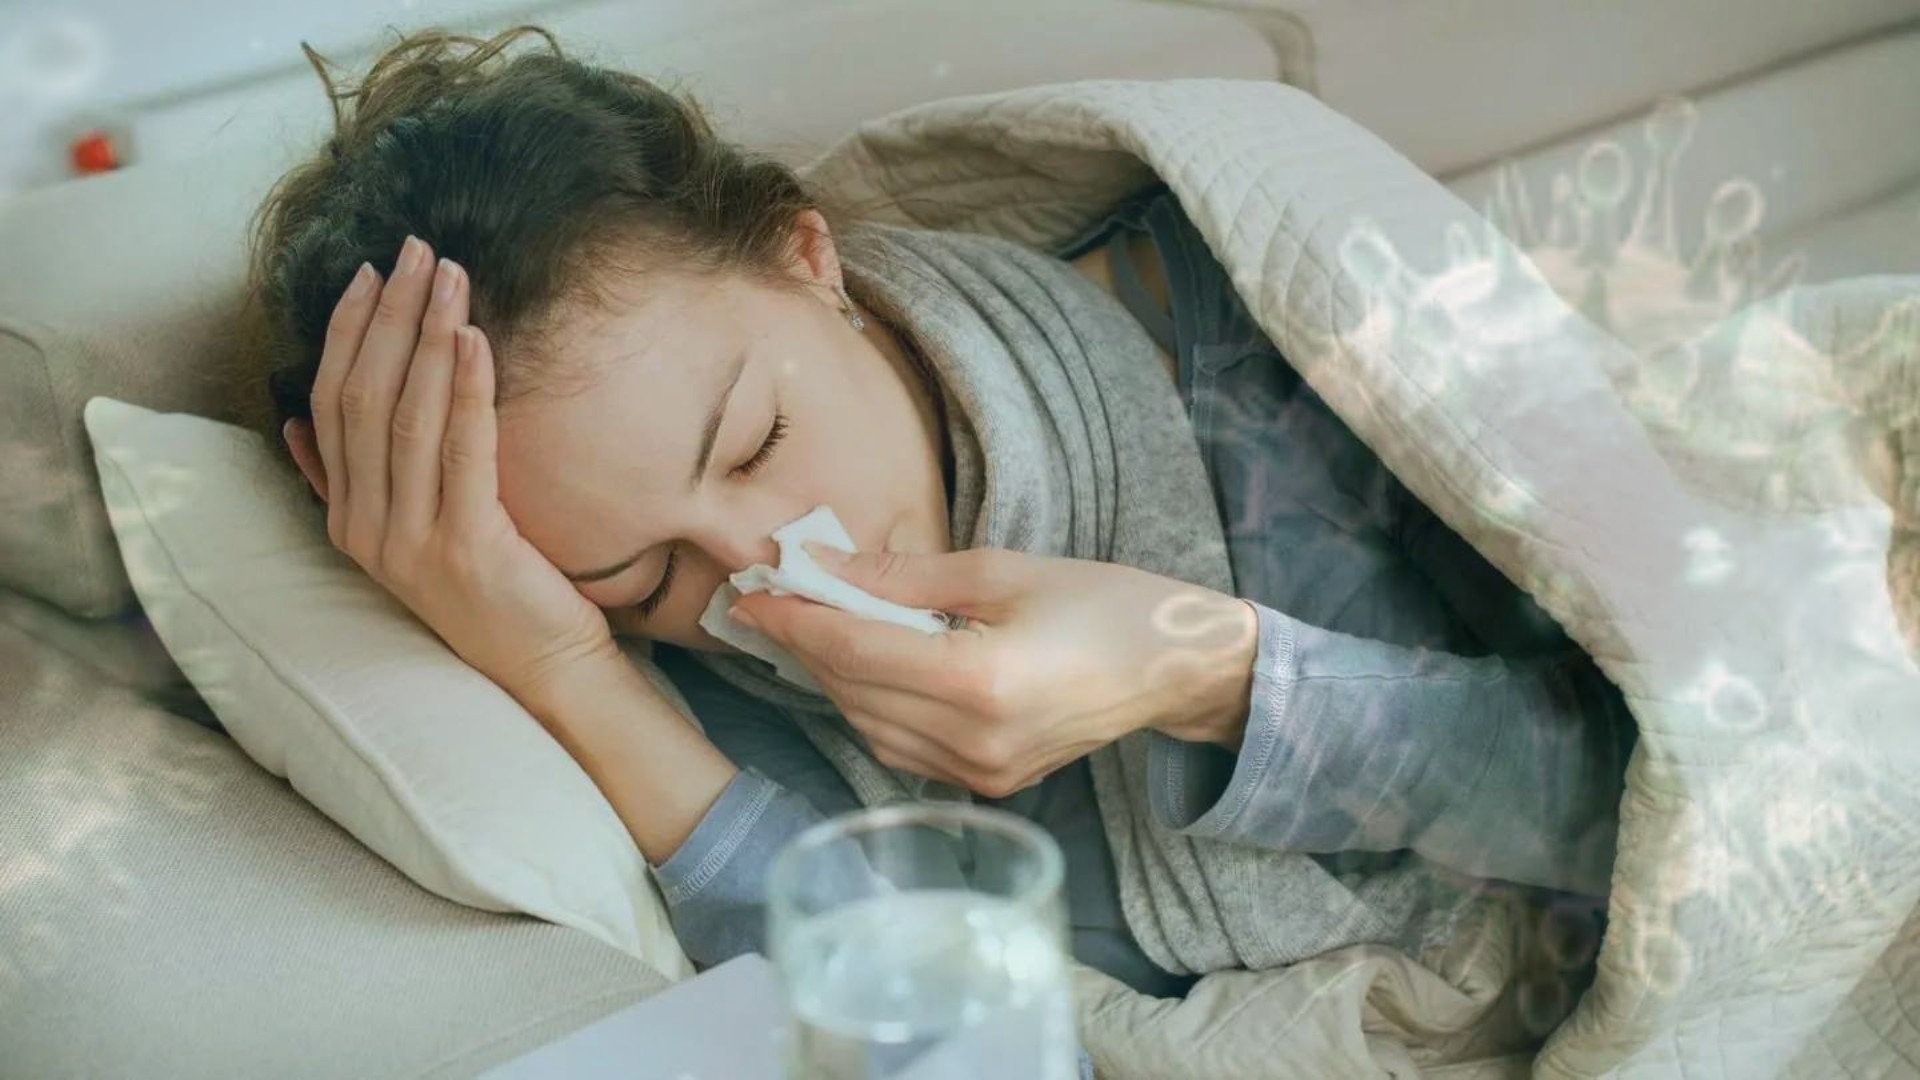 resfriado, gripe u ómicron